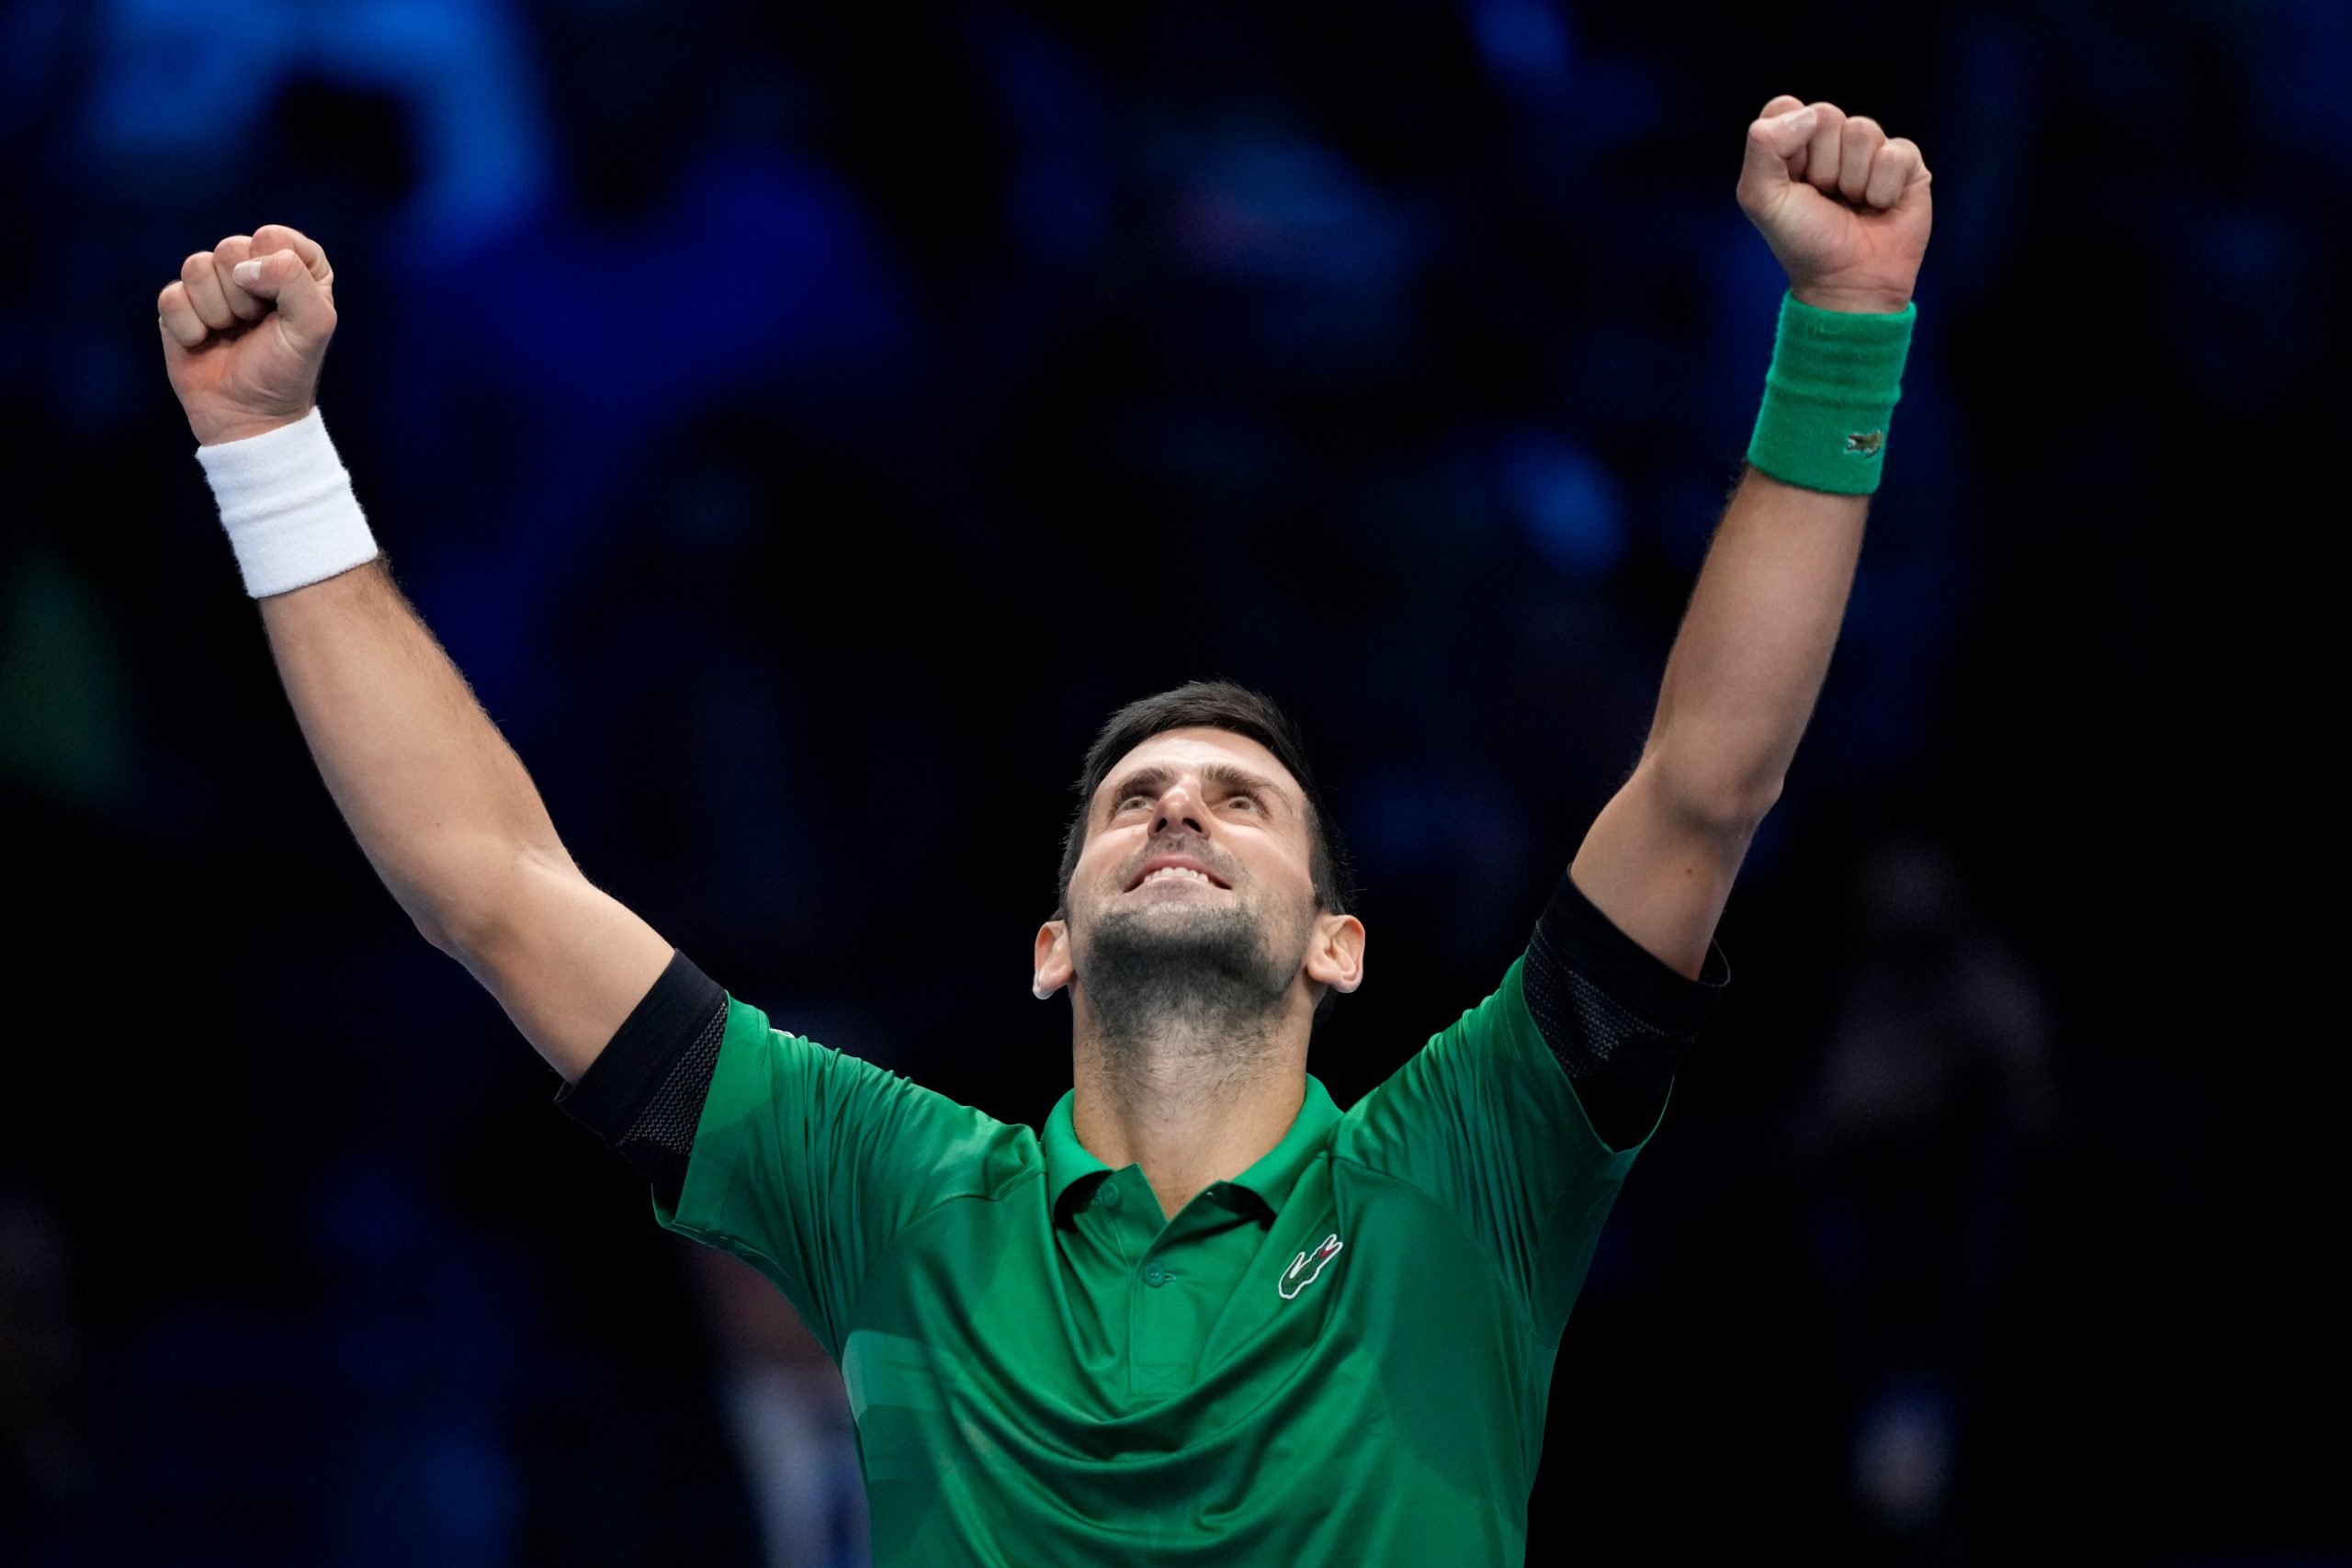 Who is Novak Djokovic?